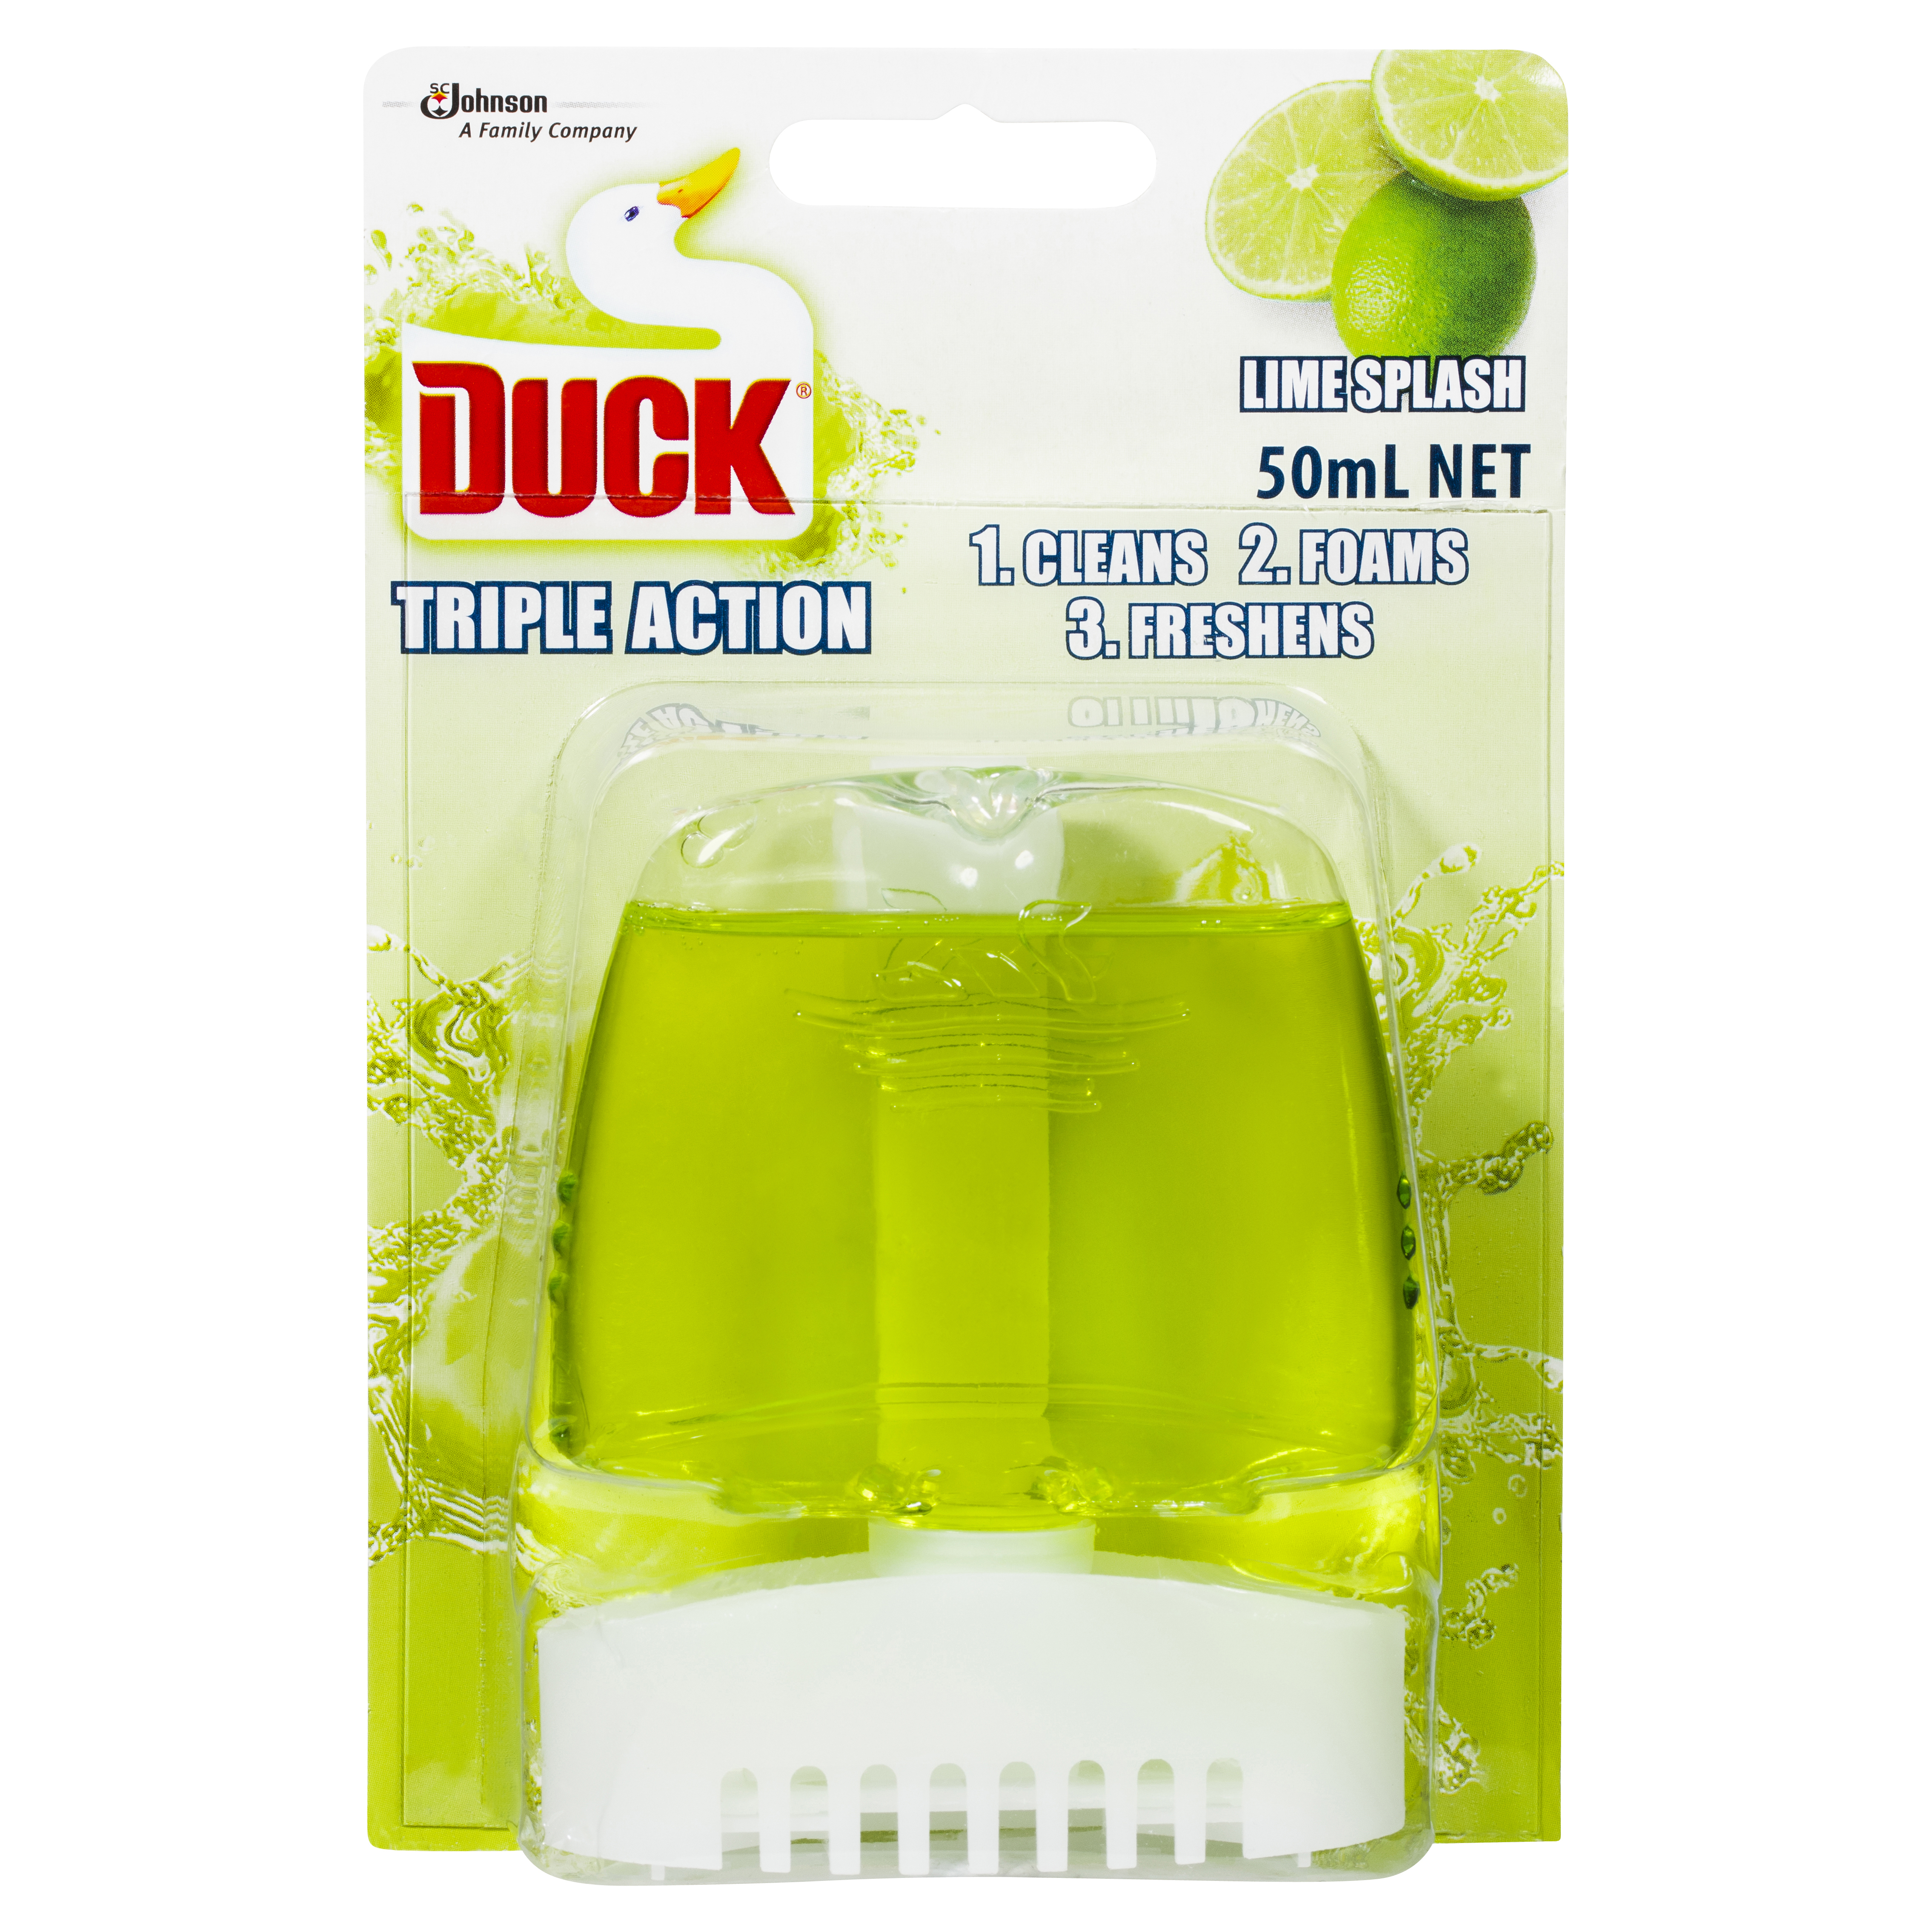 Duck® Liquid Flush Triple Action Lime Splash